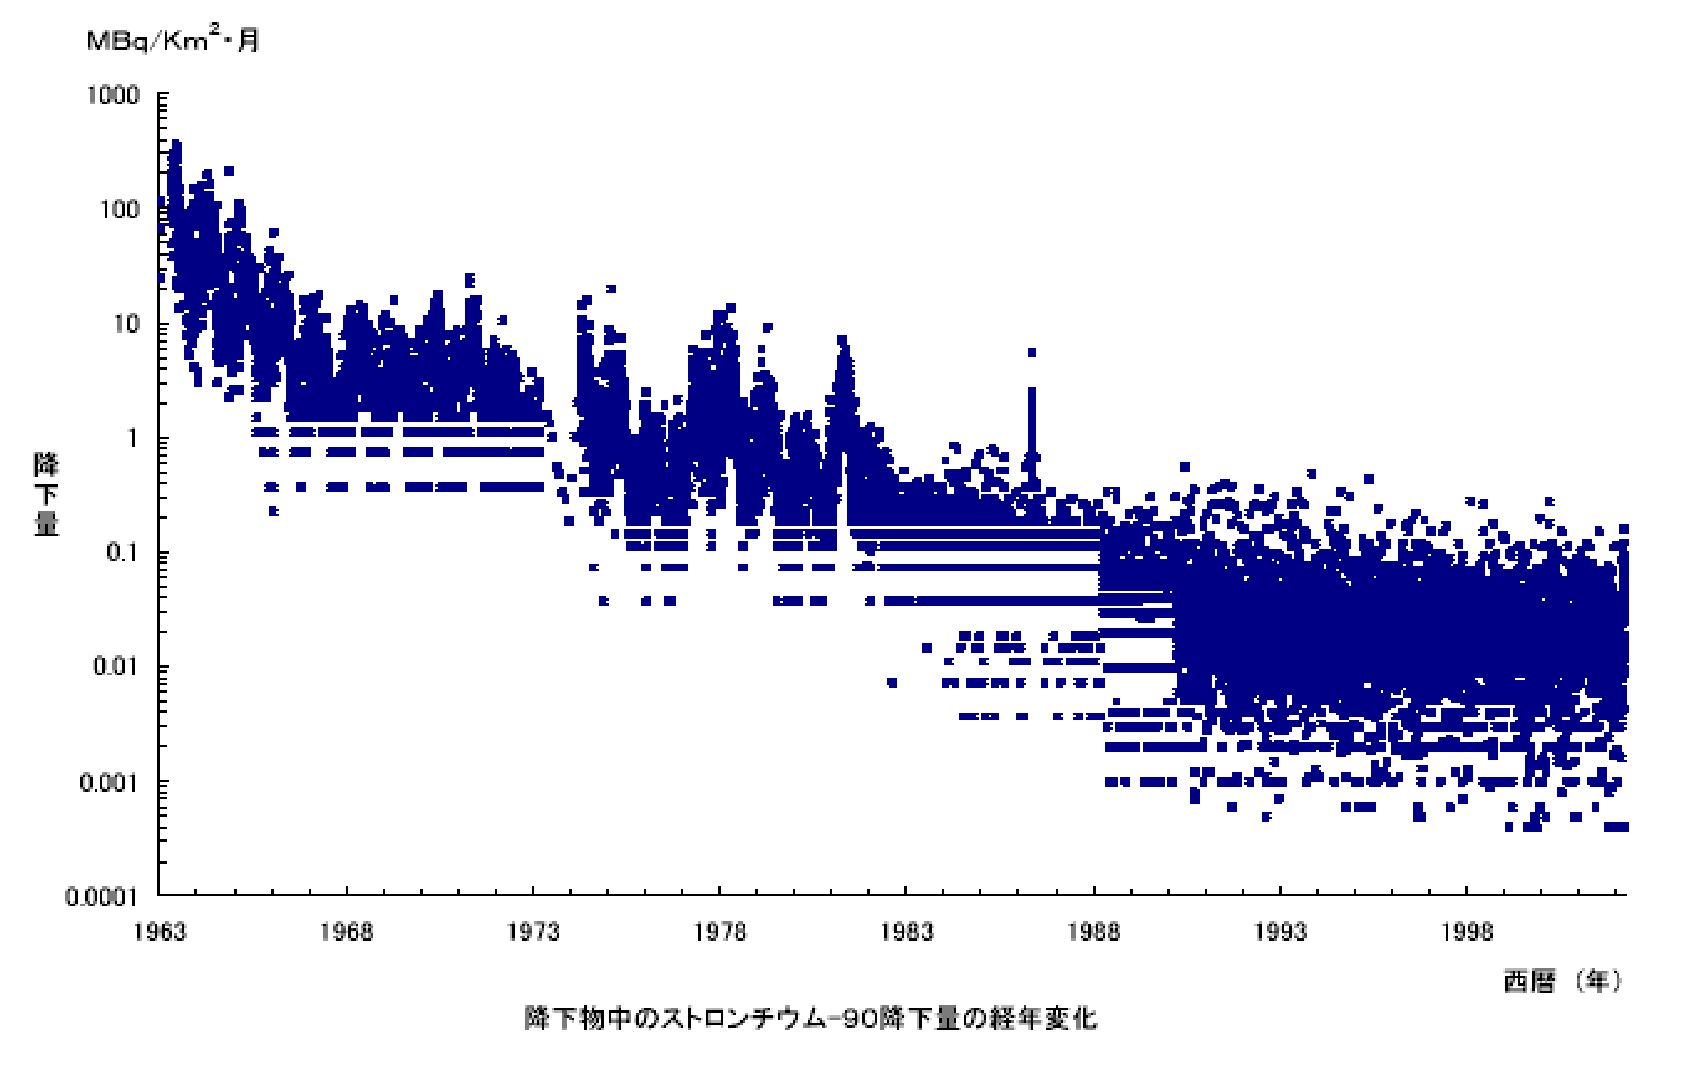 降下物中のストロンチウム-90降下量の経年変化